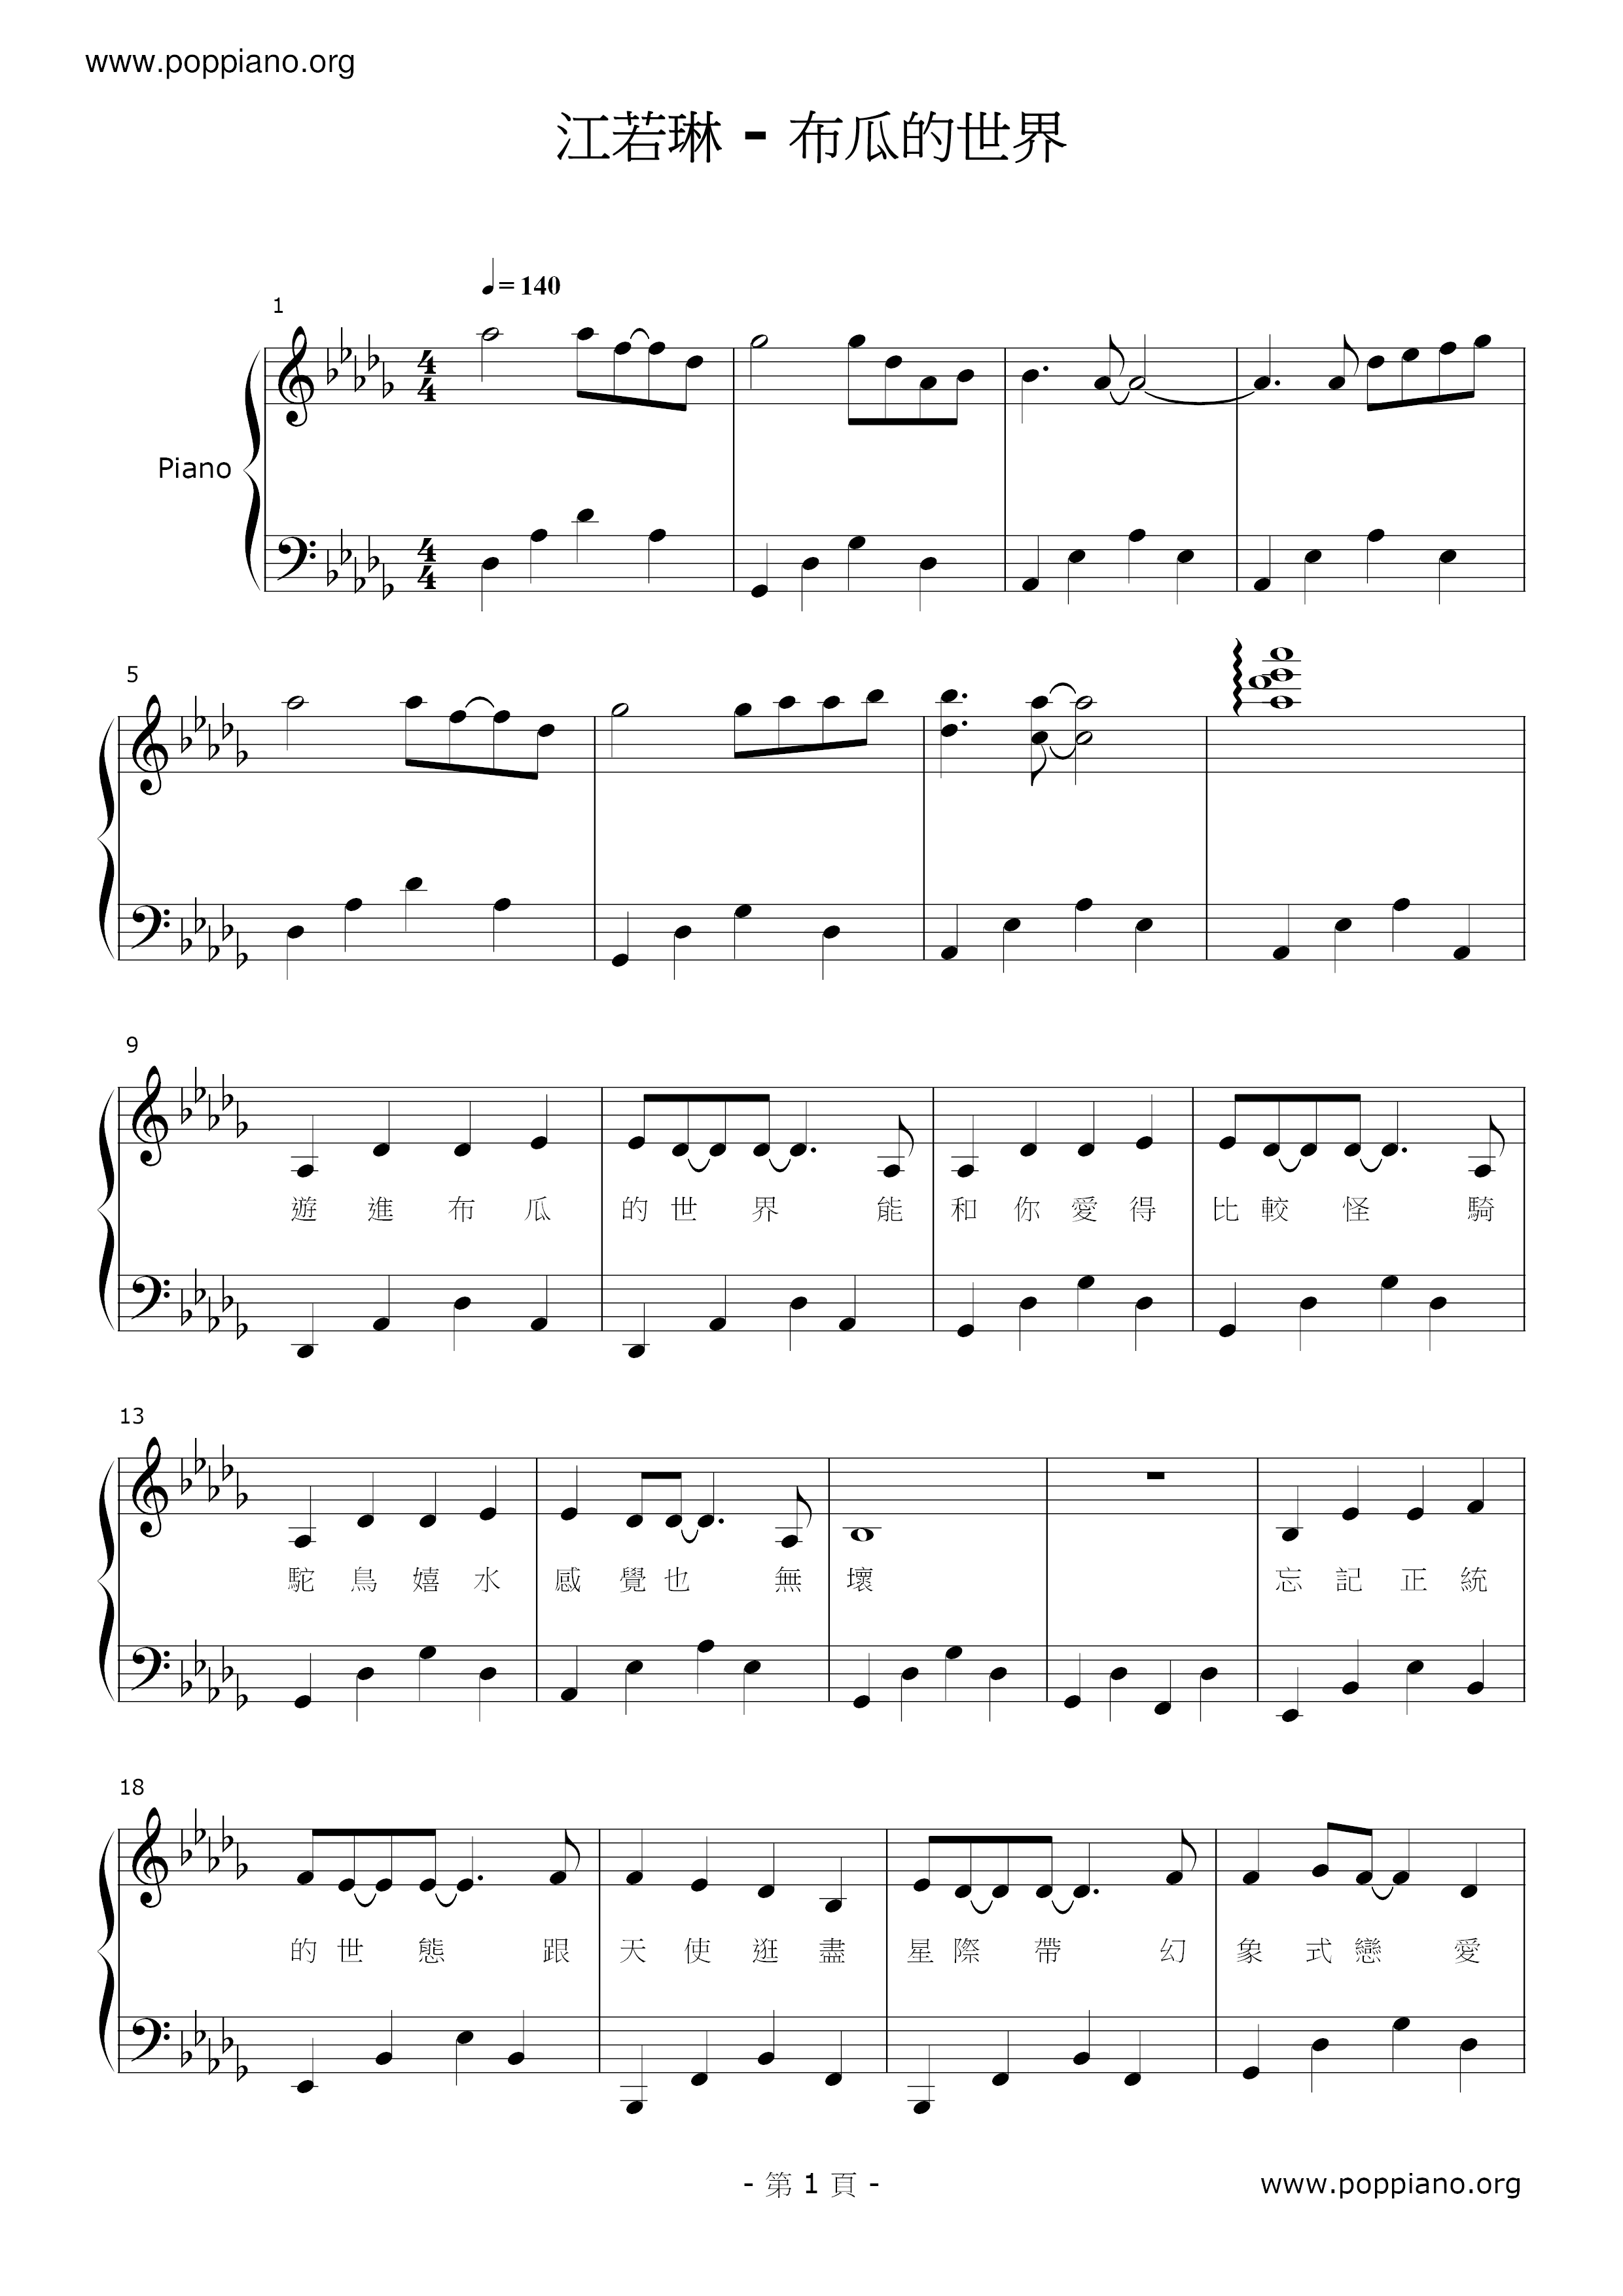 布瓜的世界琴譜